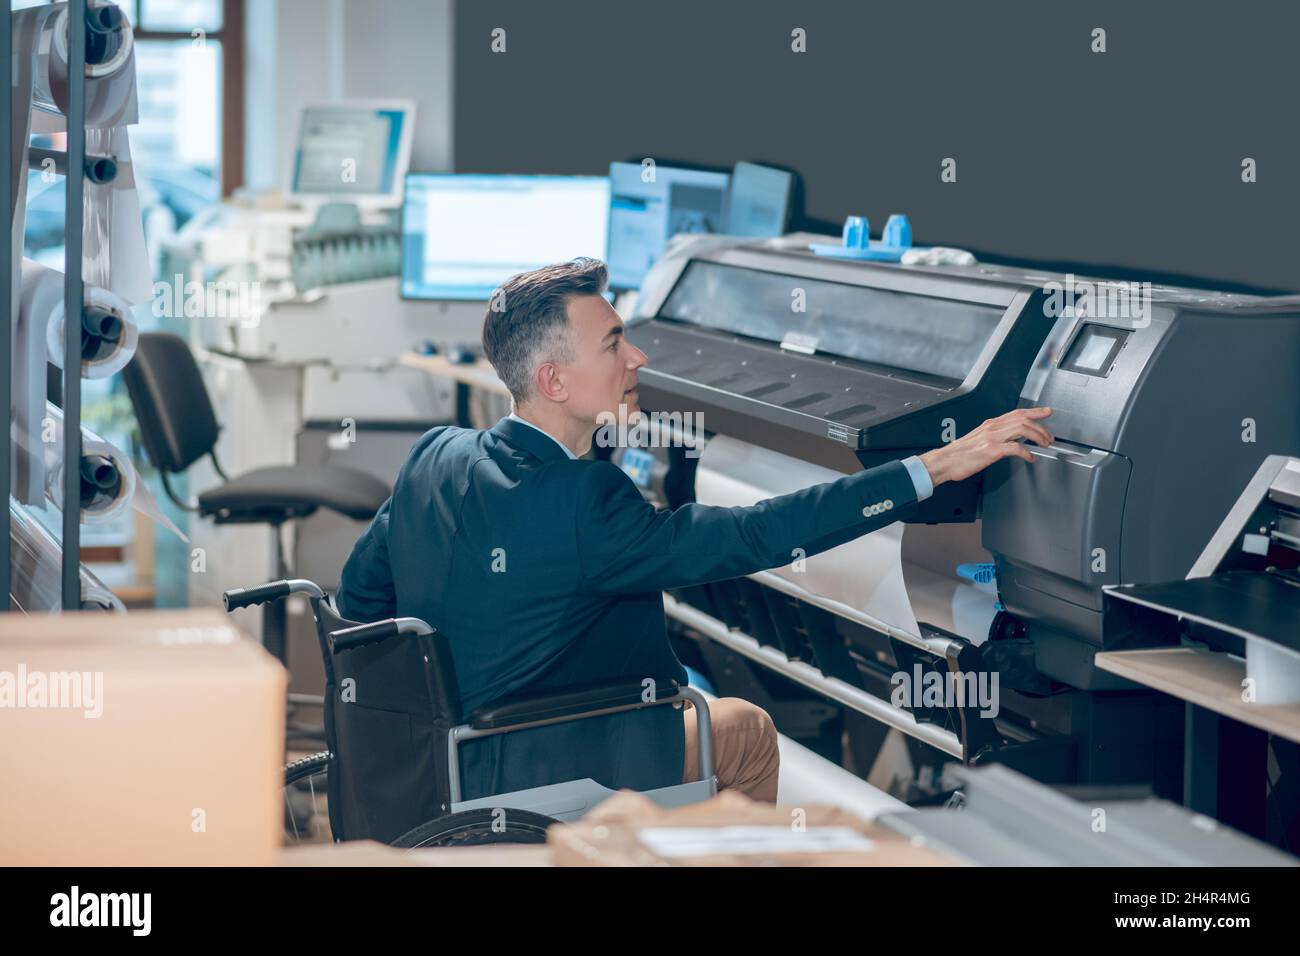 Profilo dell'uomo in sedia a rotelle che tocca i pannelli di controllo della stampante Foto Stock